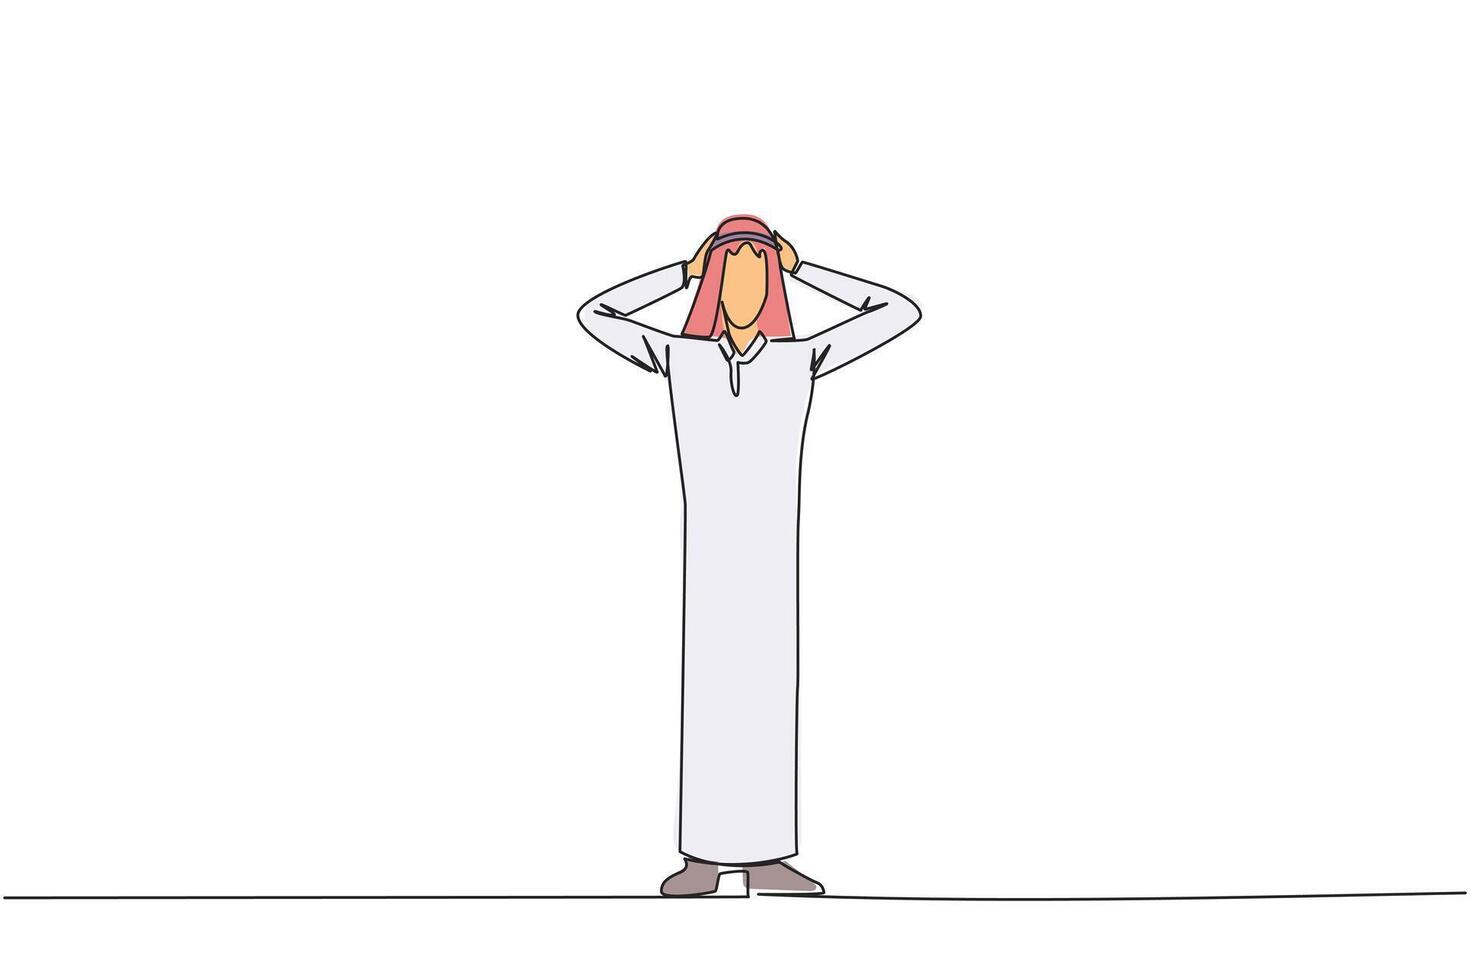 kontinuierlich einer Linie Zeichnung arabisch Geschäftsmann Stehen Gerade halten Kopf mit beide Hände. Gesten aufgeregt oder überrascht. ungewöhnlich Gesichts- Ausdrücke. erschrocken. Single Linie zeichnen Illustration vektor